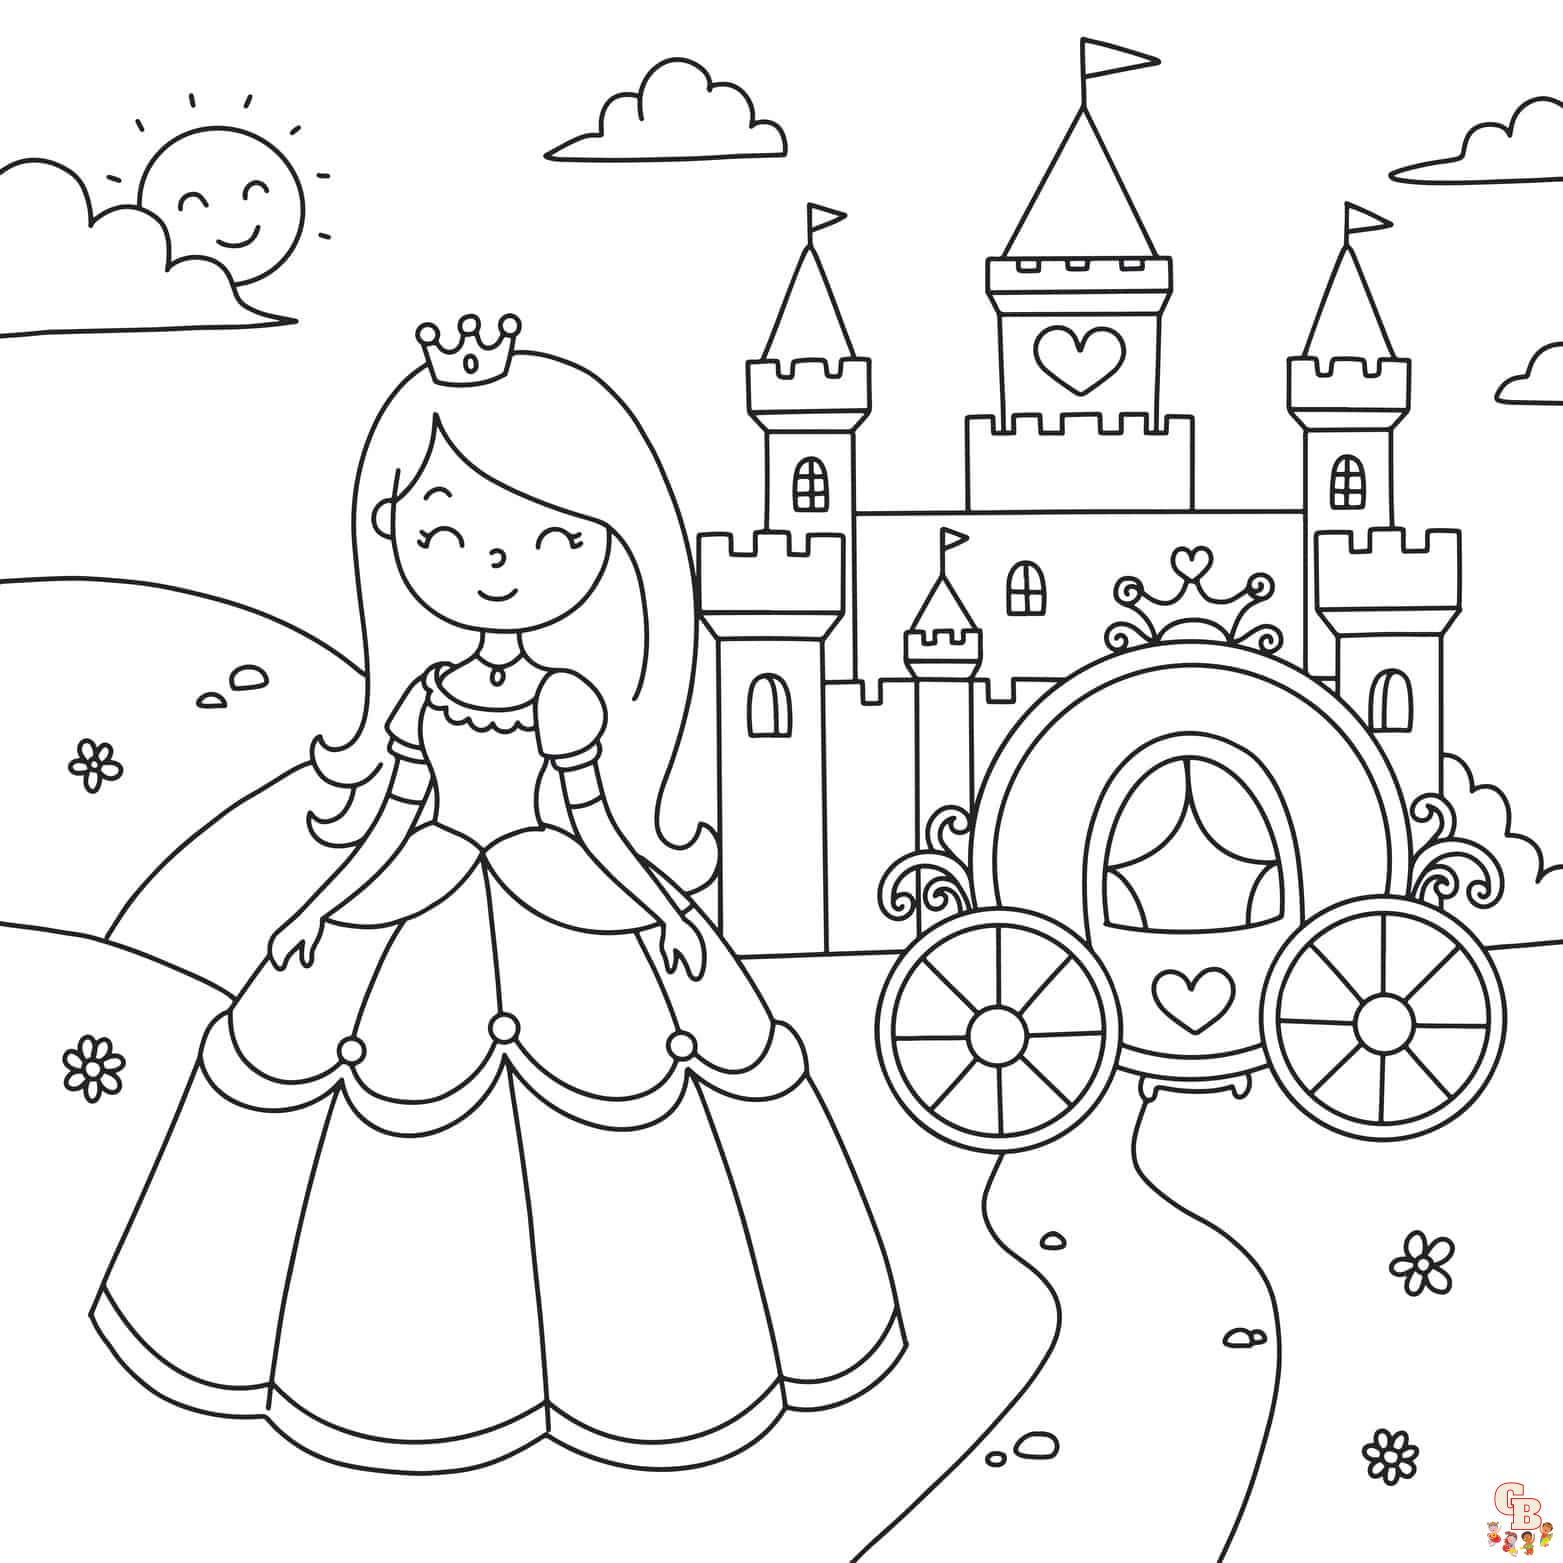 Desenho de Princesa no baile para Colorir - Colorir.com